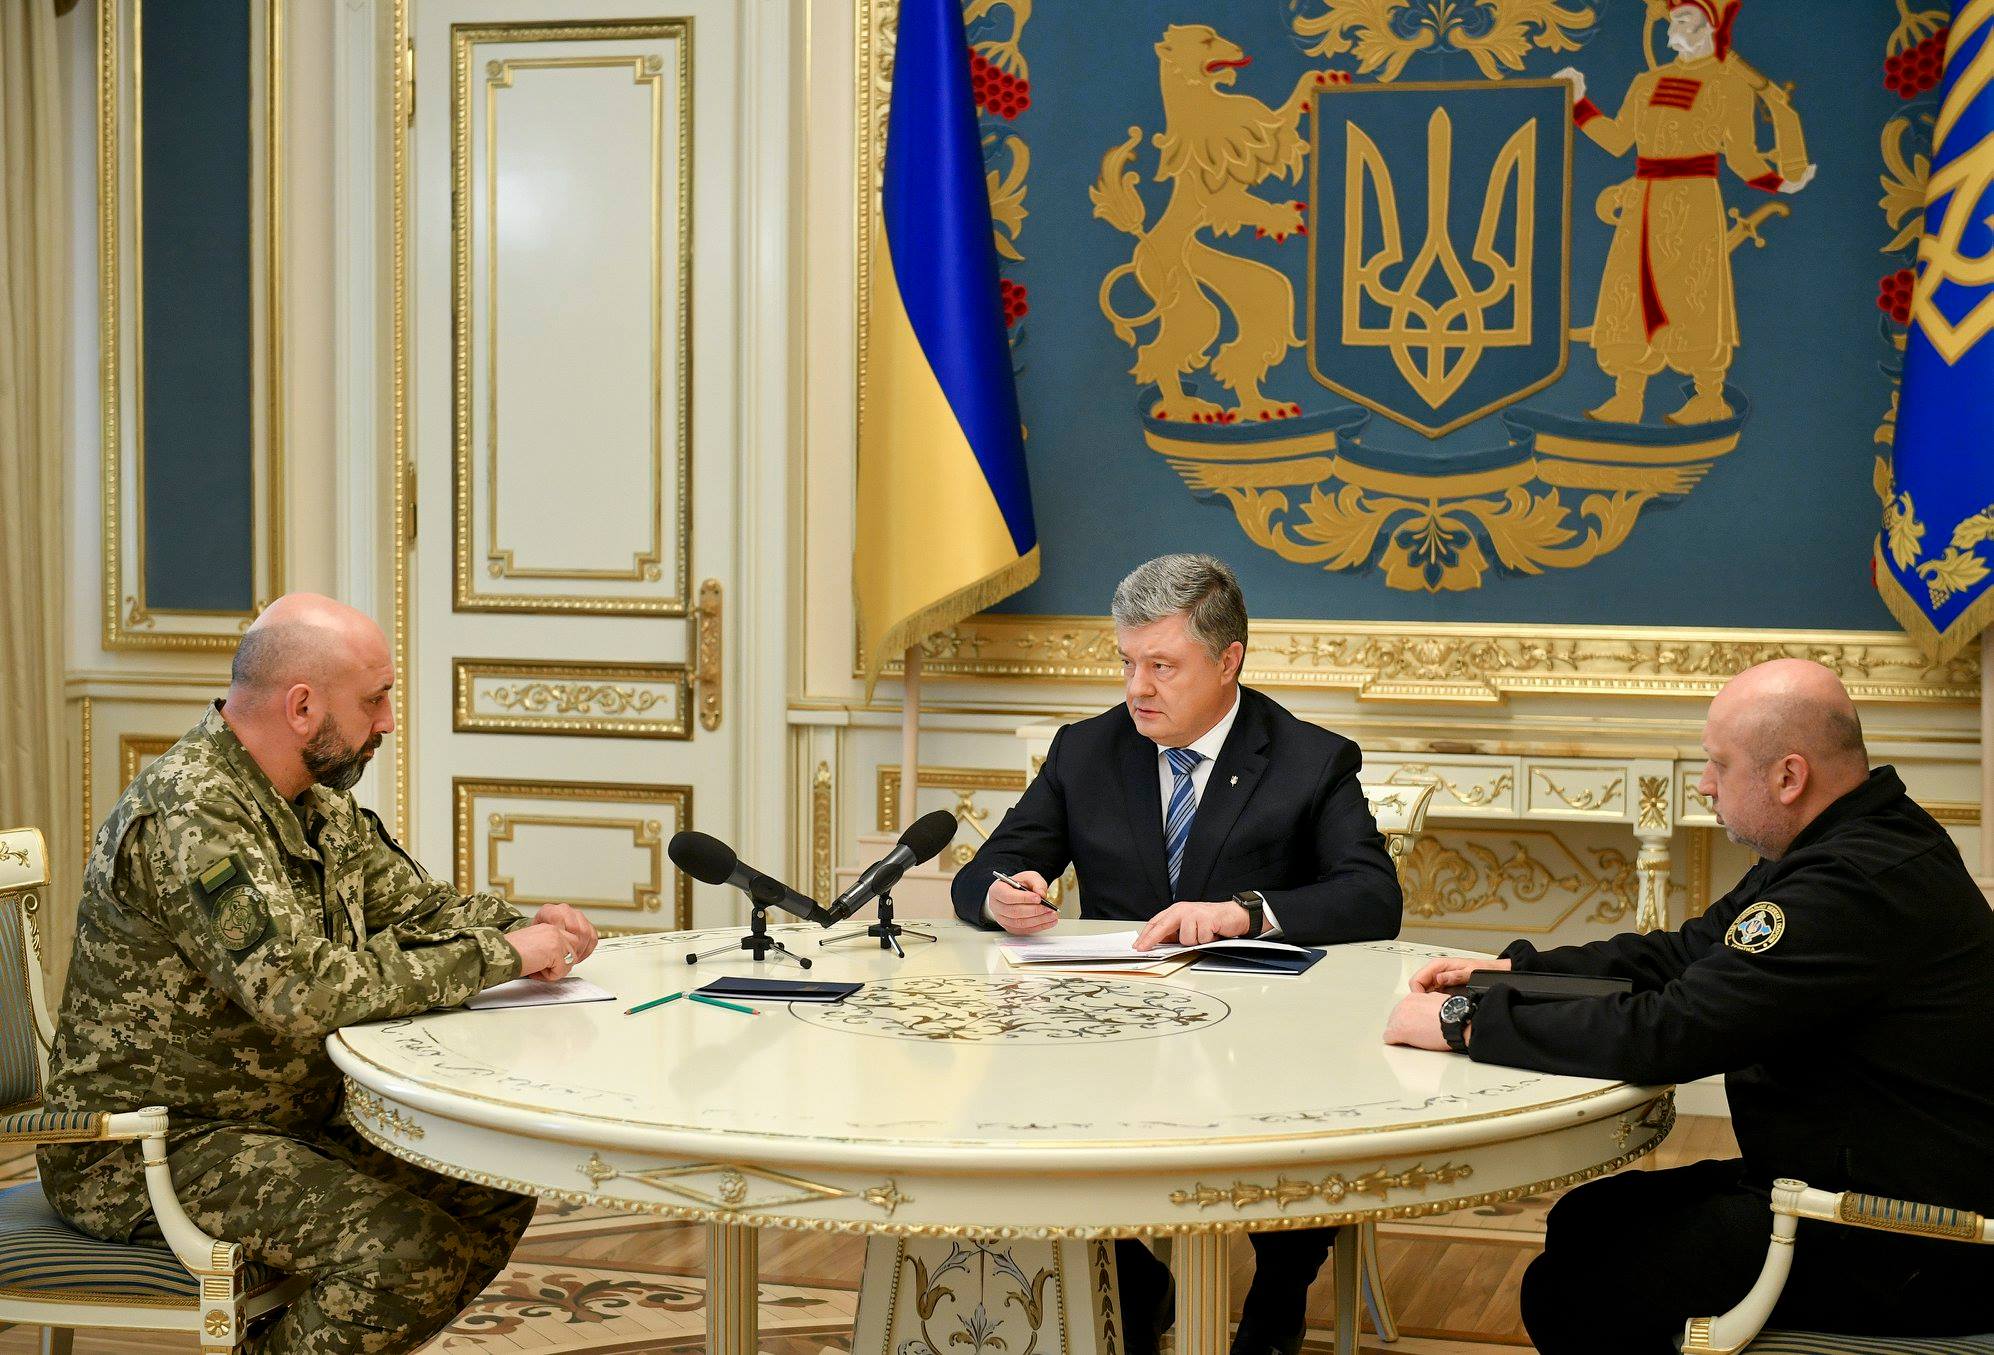 Порошенко предложил проверить на полиграфе руководство «Укроборонпрома»